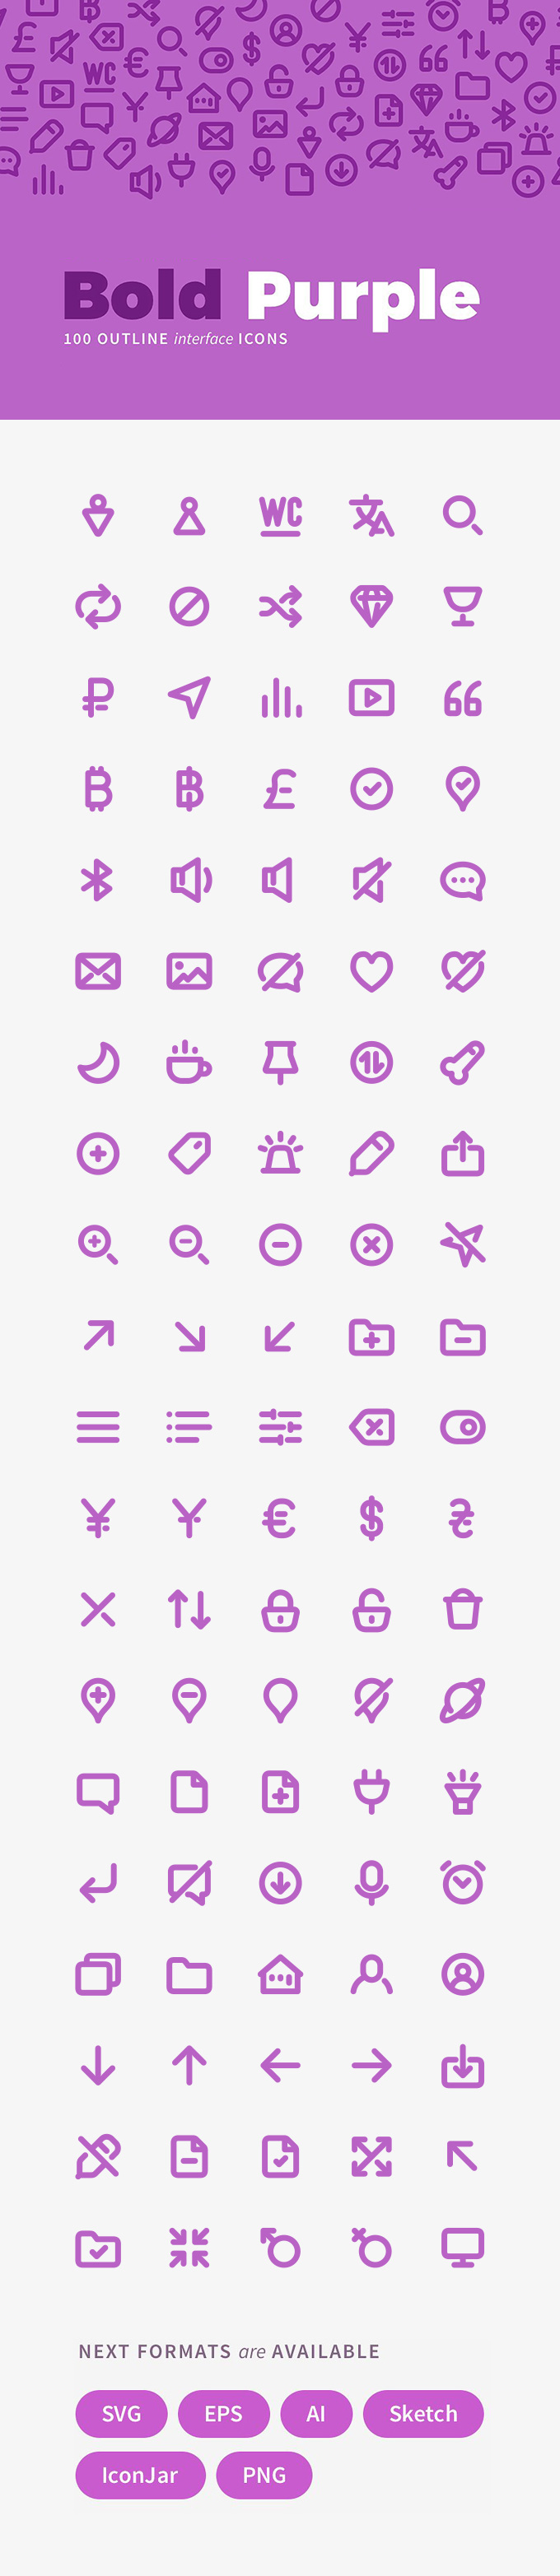 100个紫色风格线框图标集 100 Bold Purple Line Icons插图